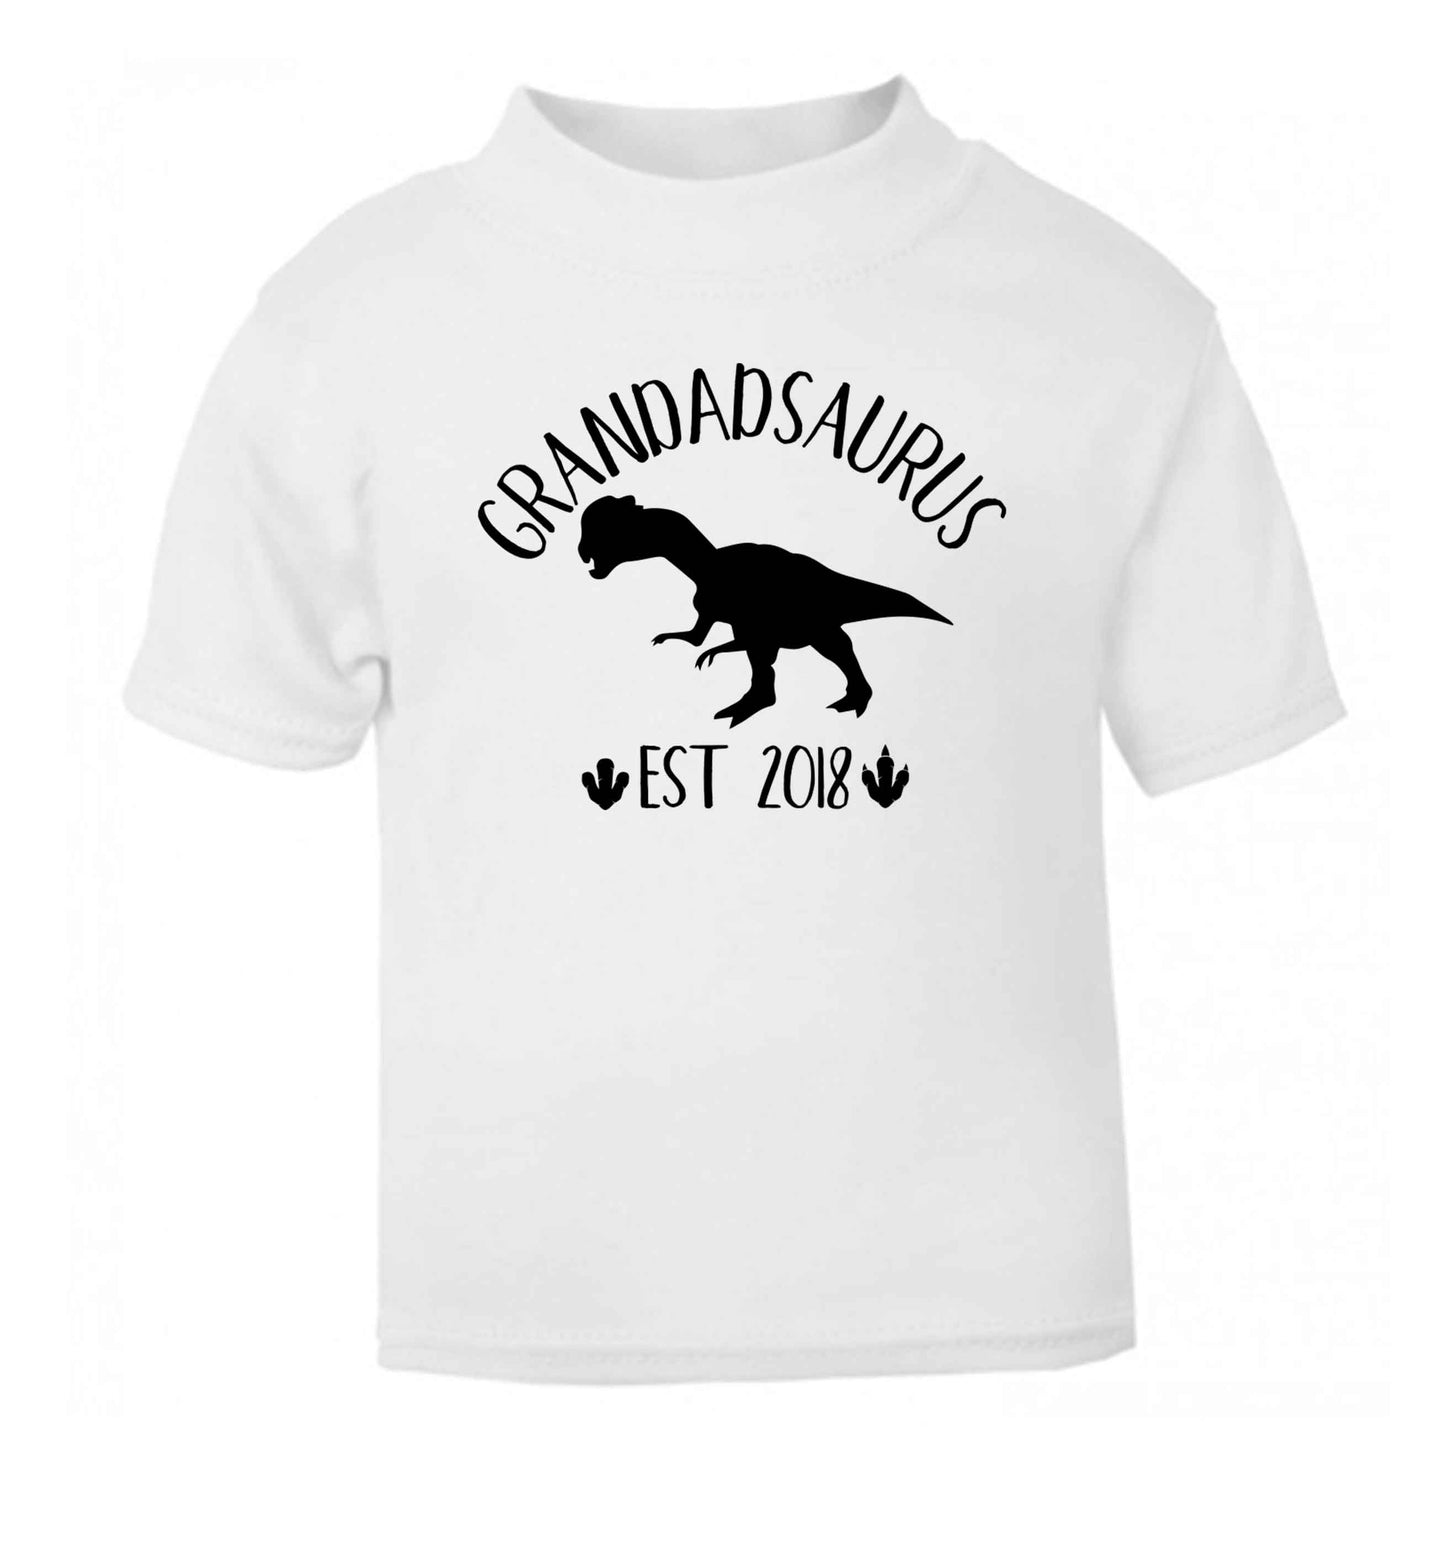 Personalised grandadsaurus since (custom date) white Baby Toddler Tshirt 2 Years